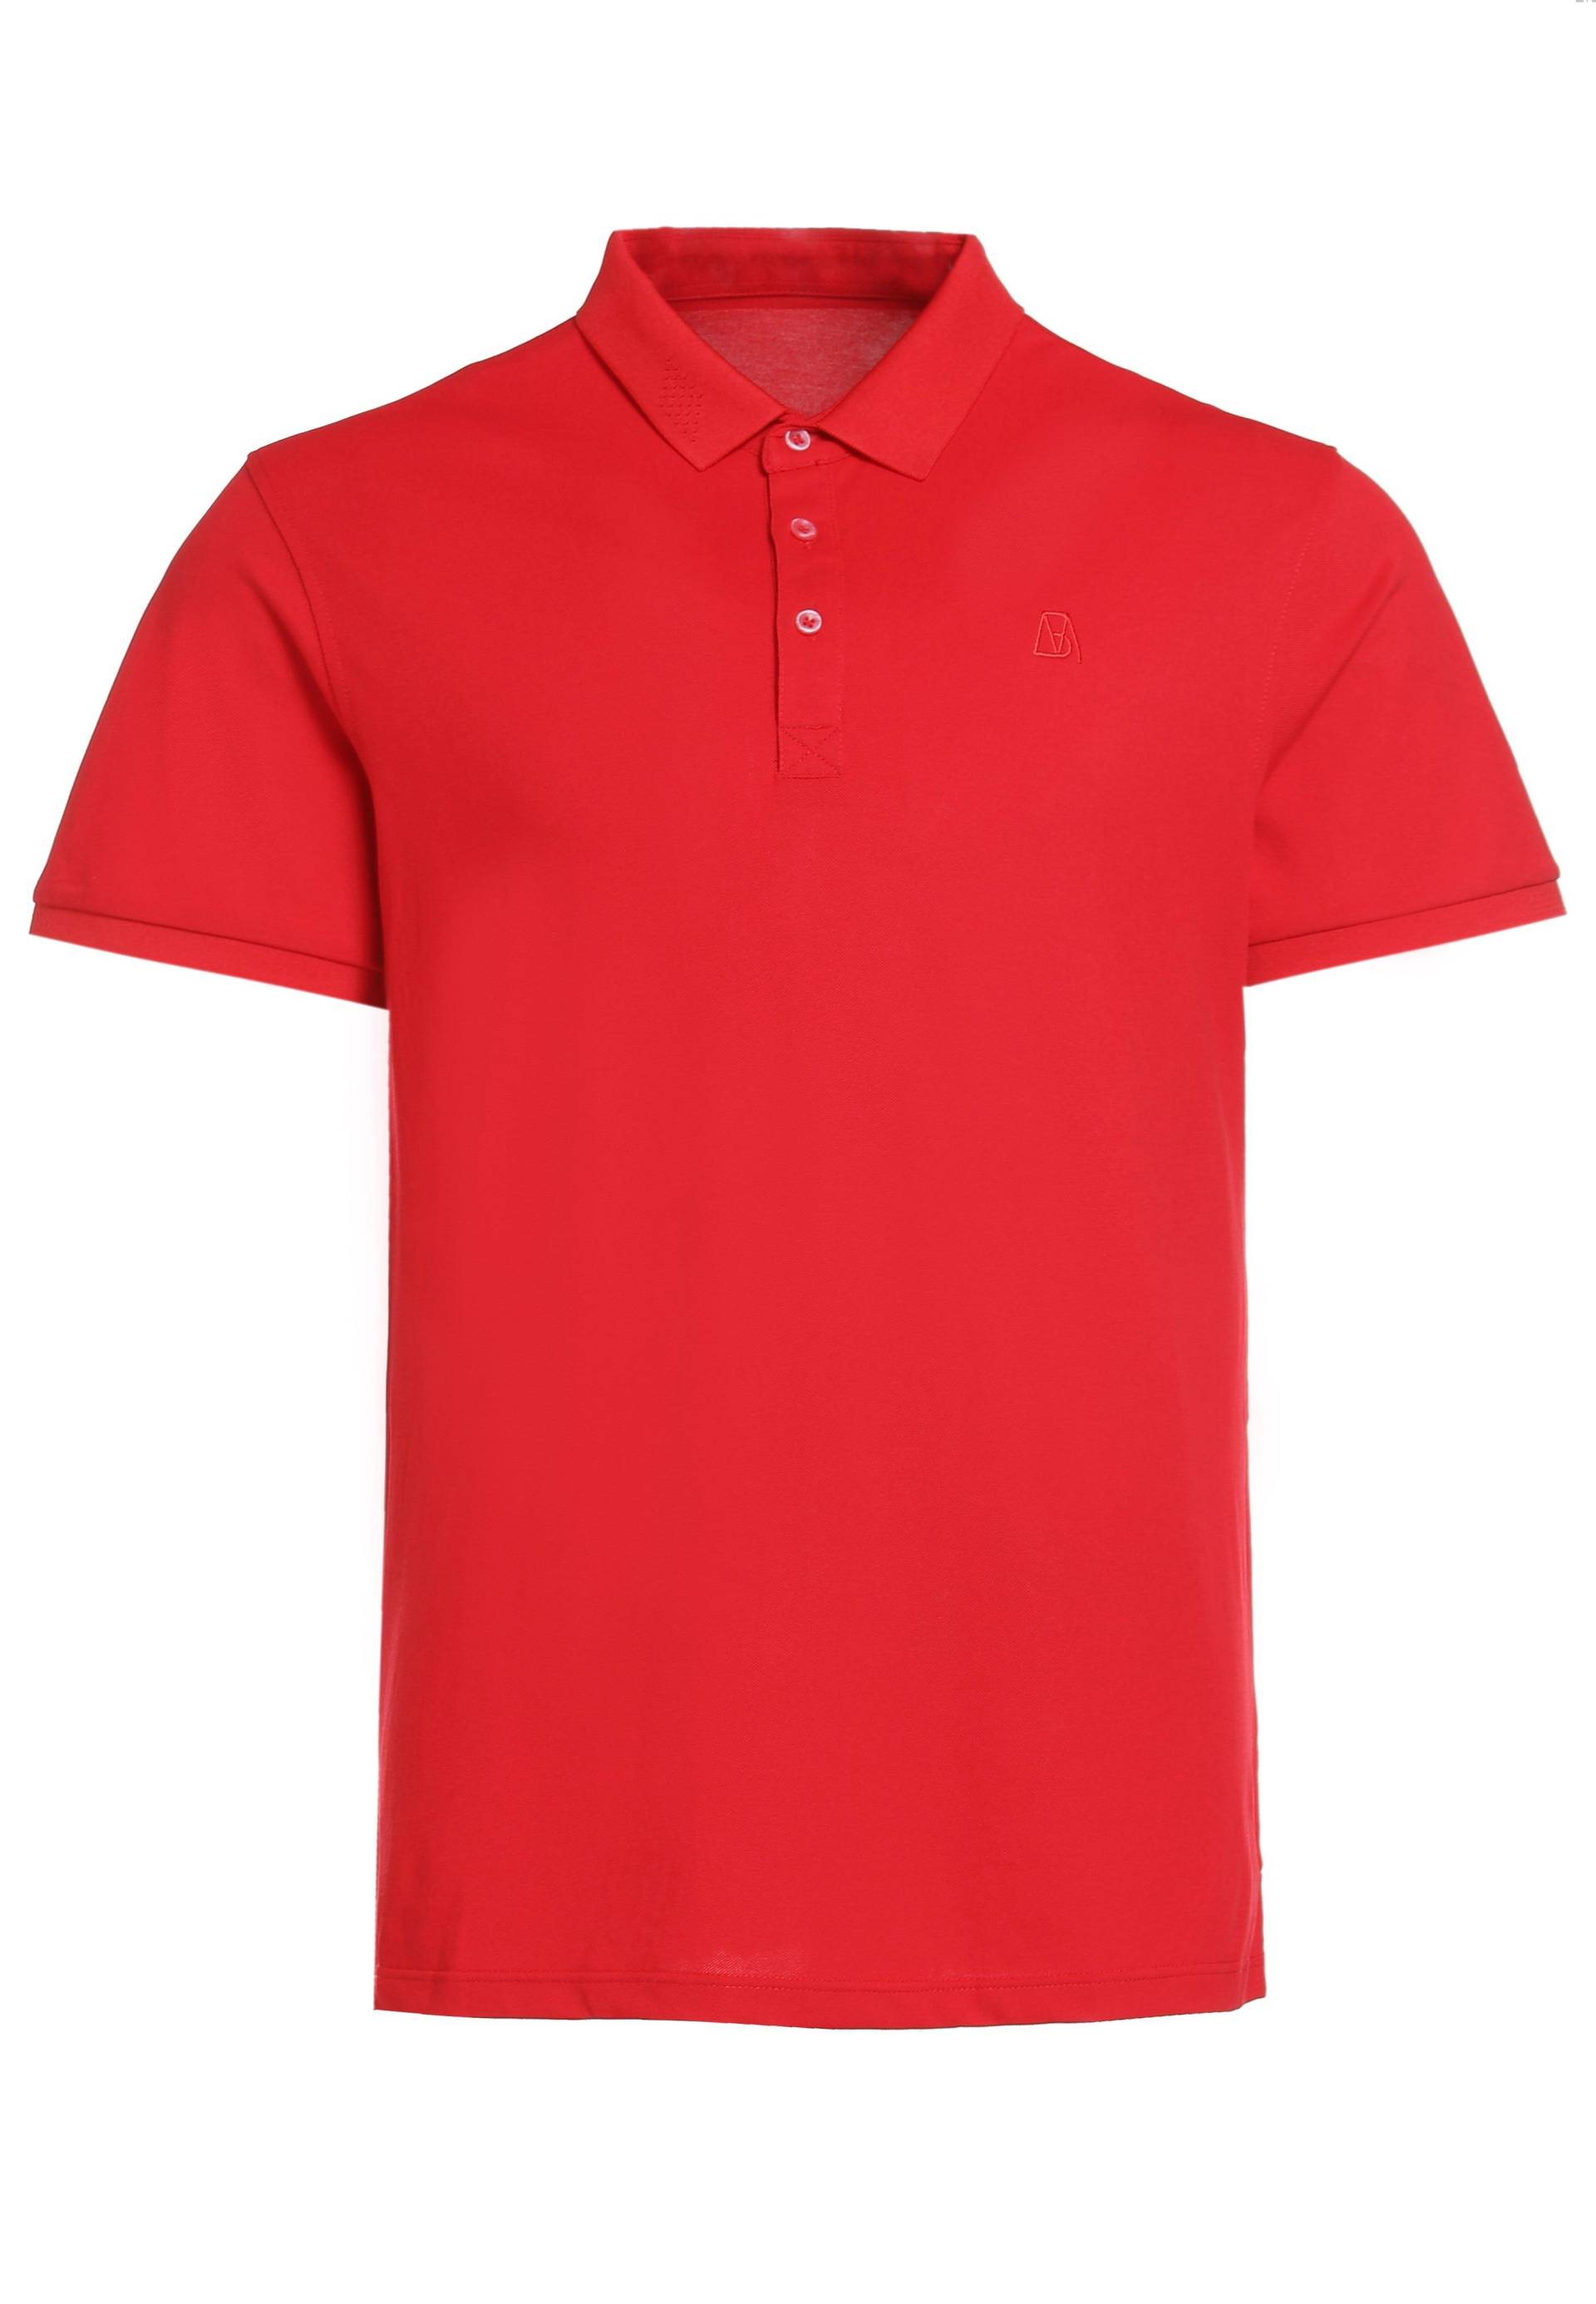 Schlichtes Poloshirt Aus Baumwolle Herren Rot Bunt XXL von Bellemere New York